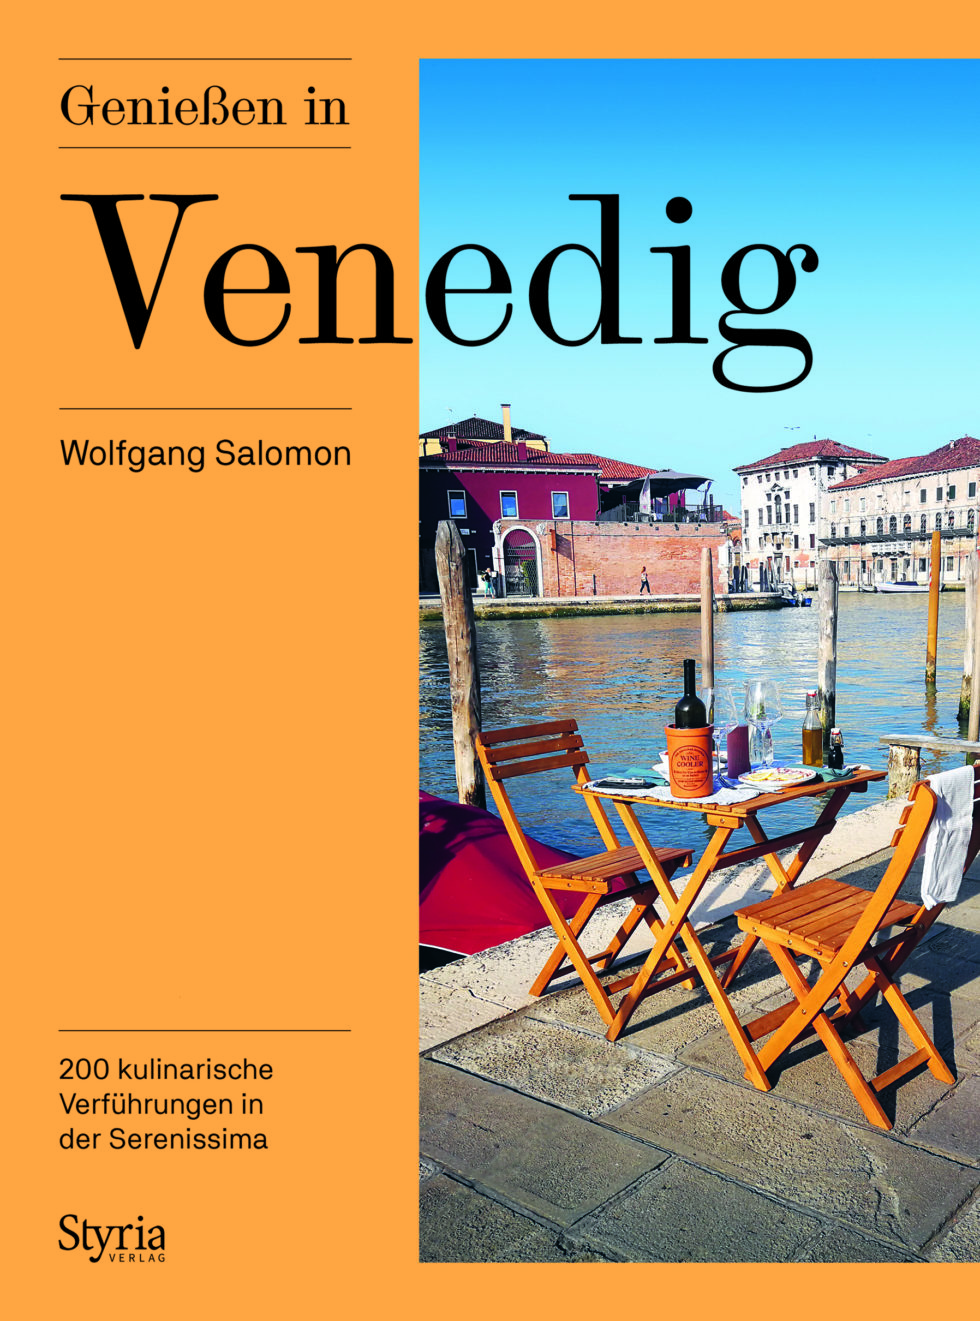 Genießen in Venedig | Wolfgang Salomon | 200 kulinarische Verführungen in der Serenissima | Styria Verlag | abseitsderpfade.at | Abseits der Pfade